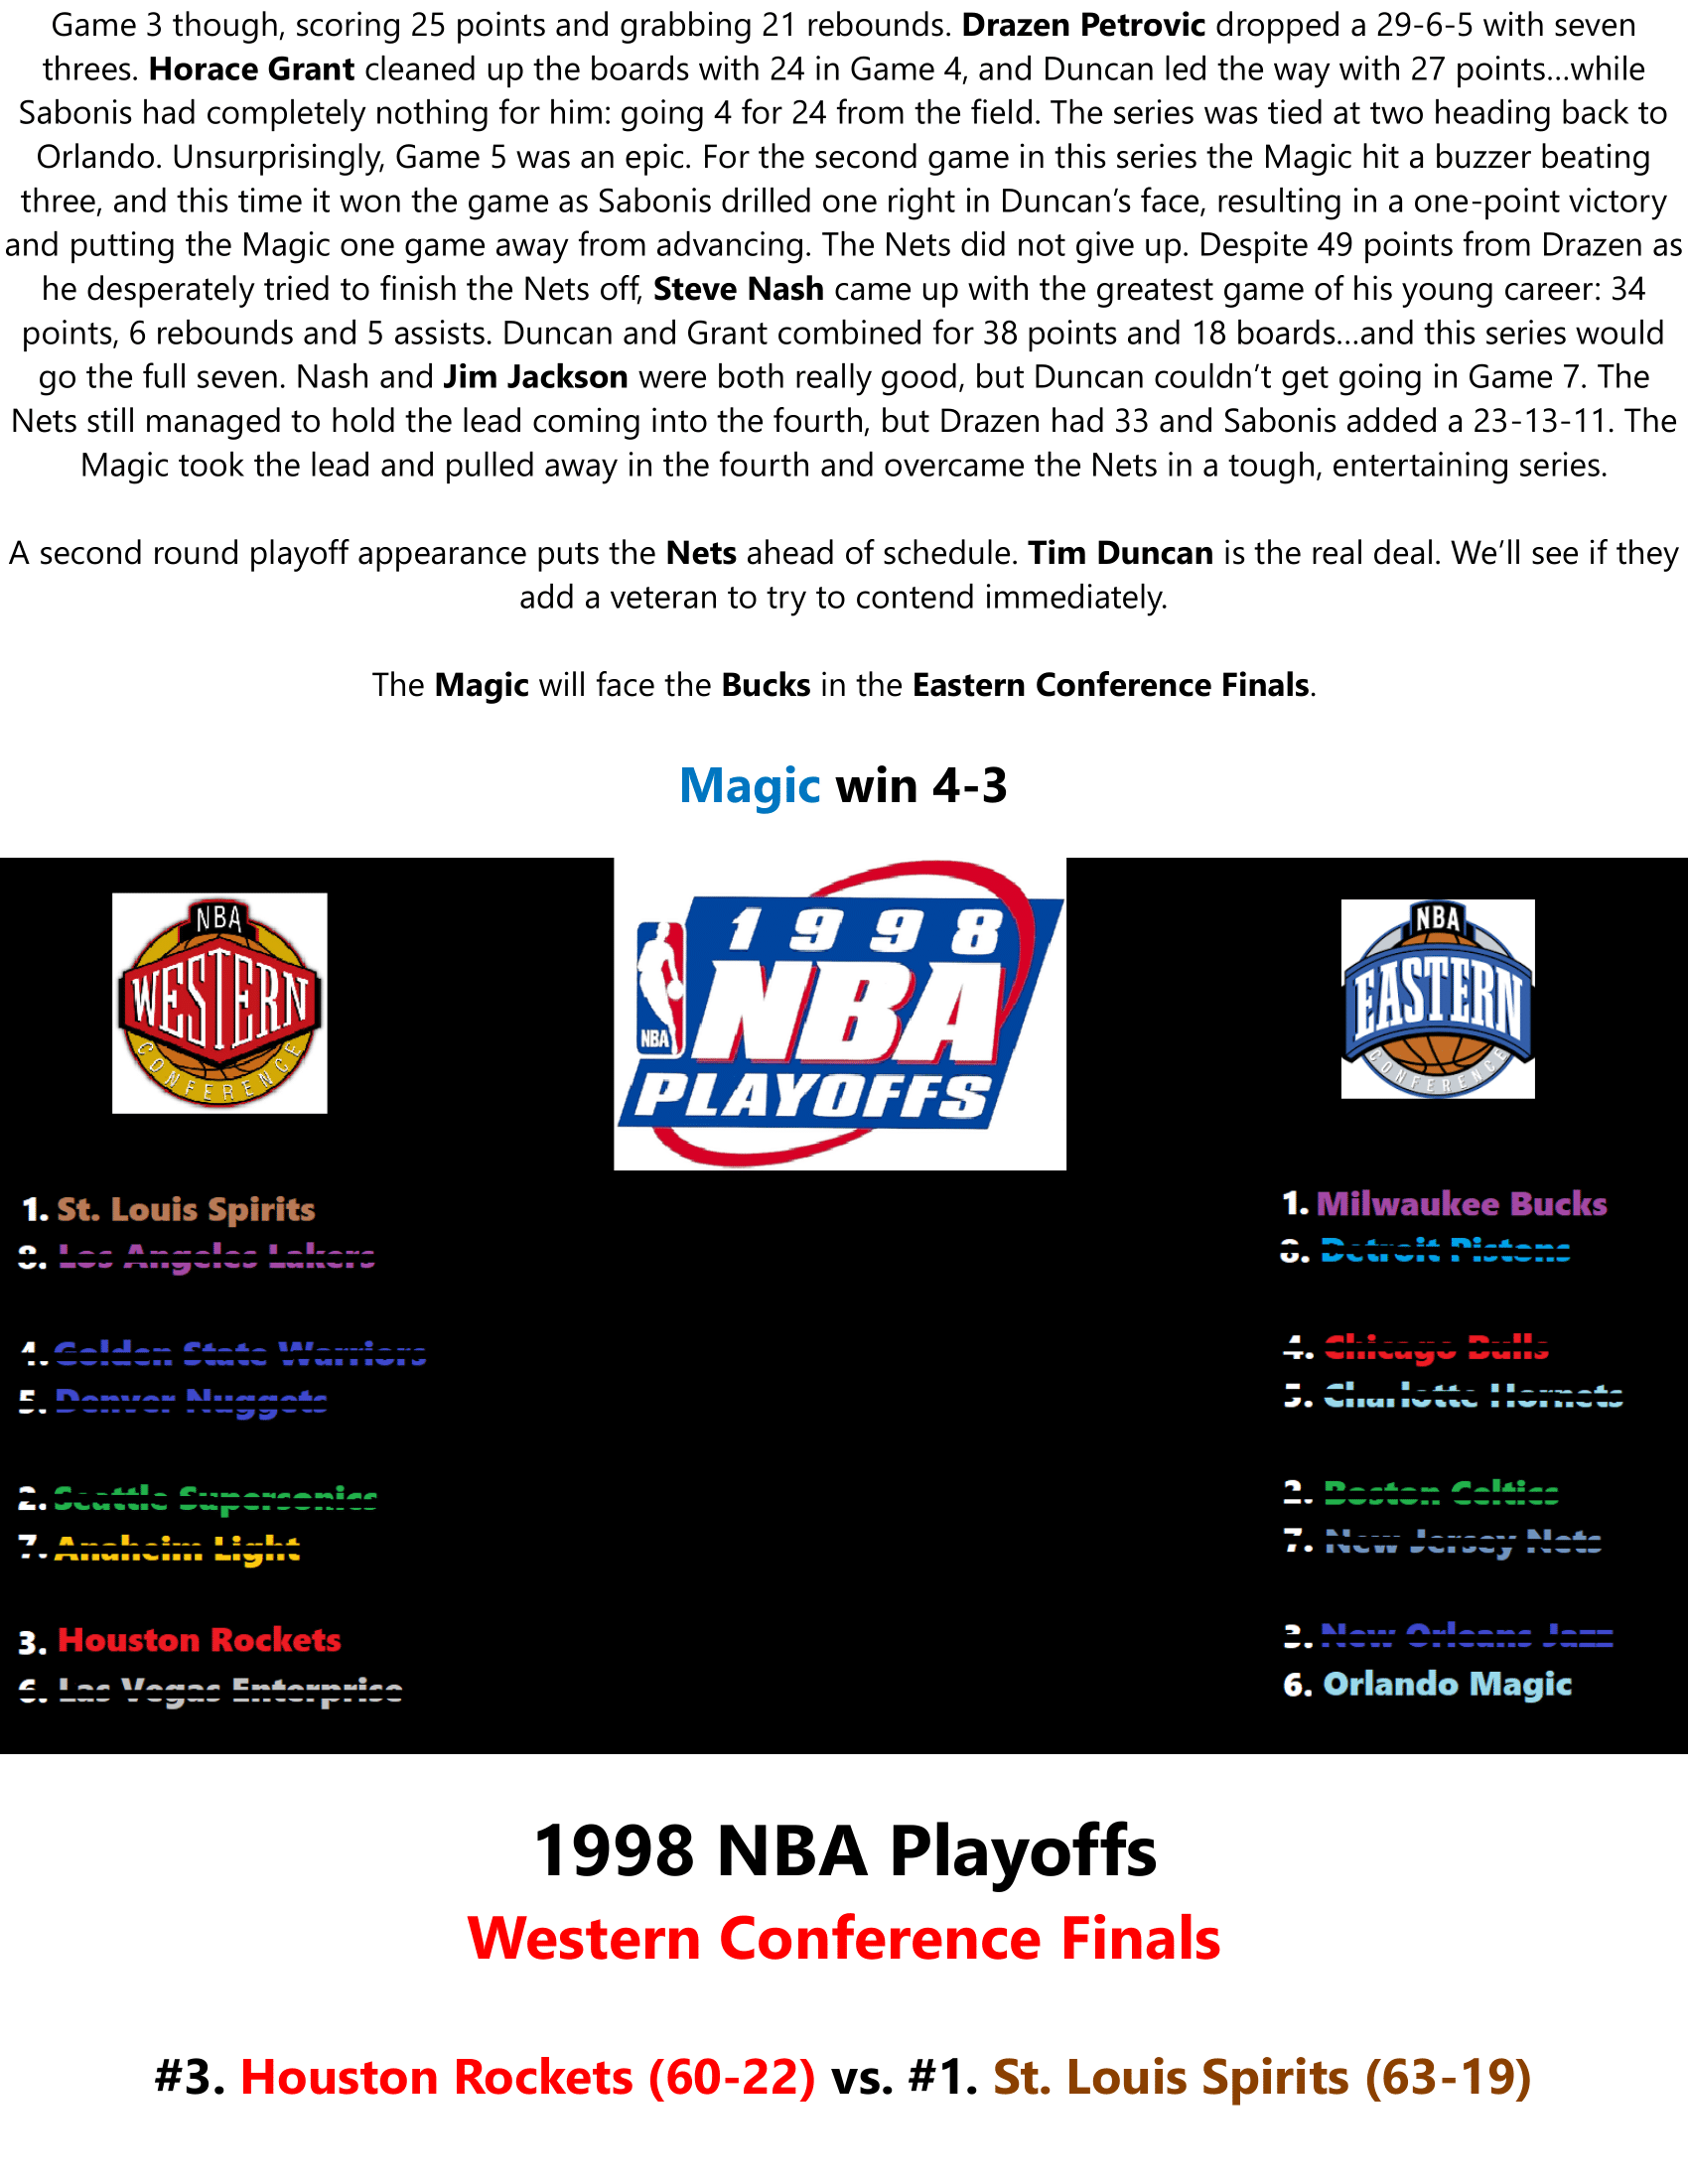 97-98-Part-4-Playoffs-17.png